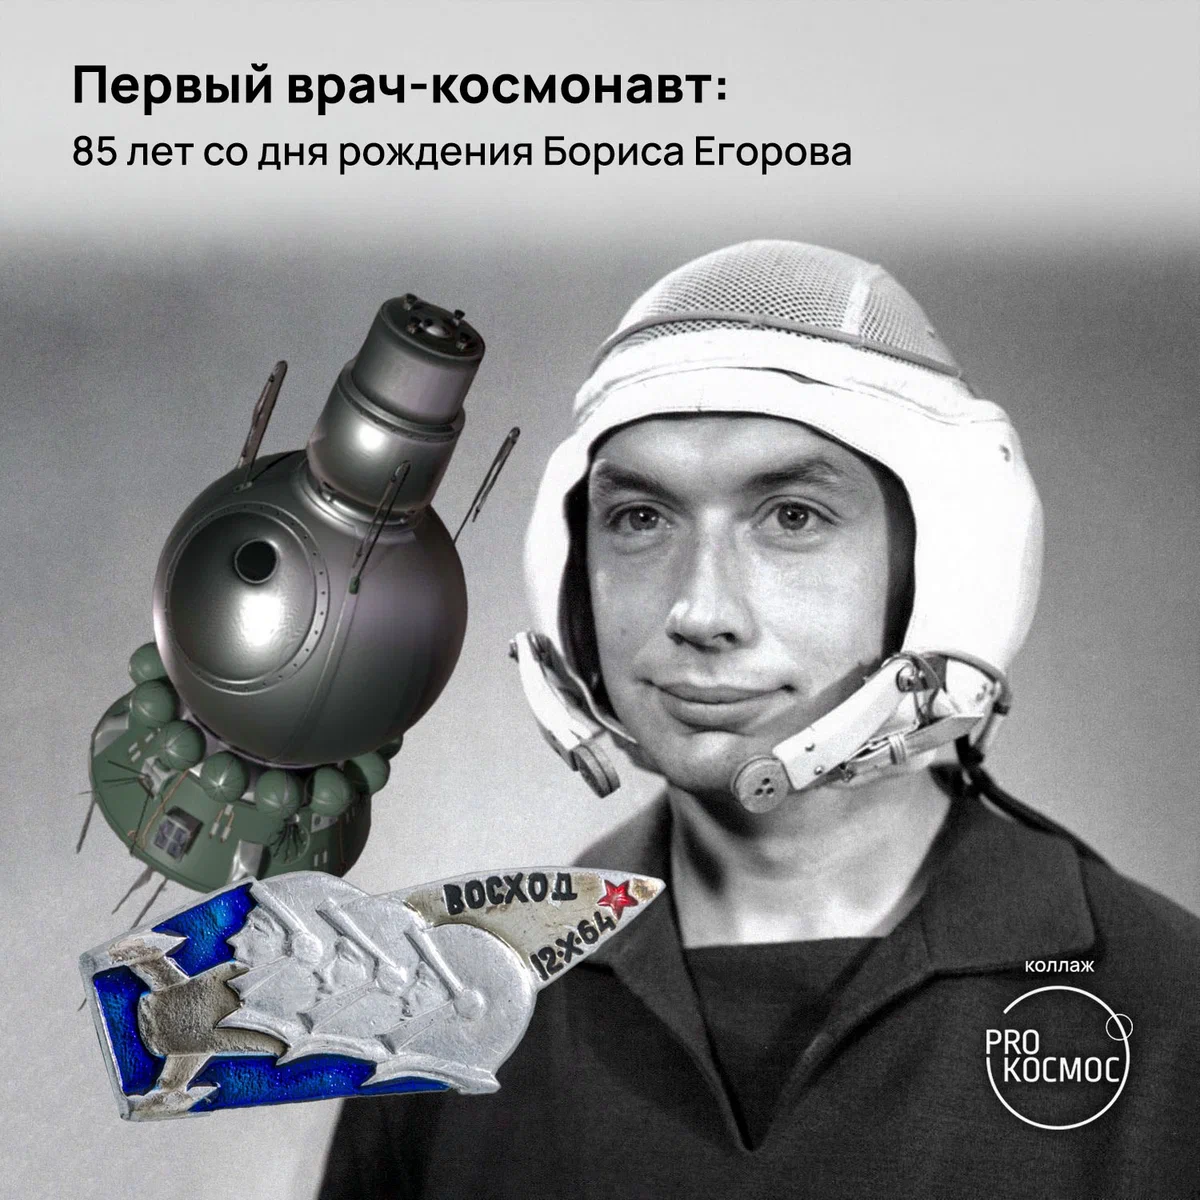 Первый врач-космонавт: 85 лет со дня рождения Бориса Егорова height=1200px width=1200px